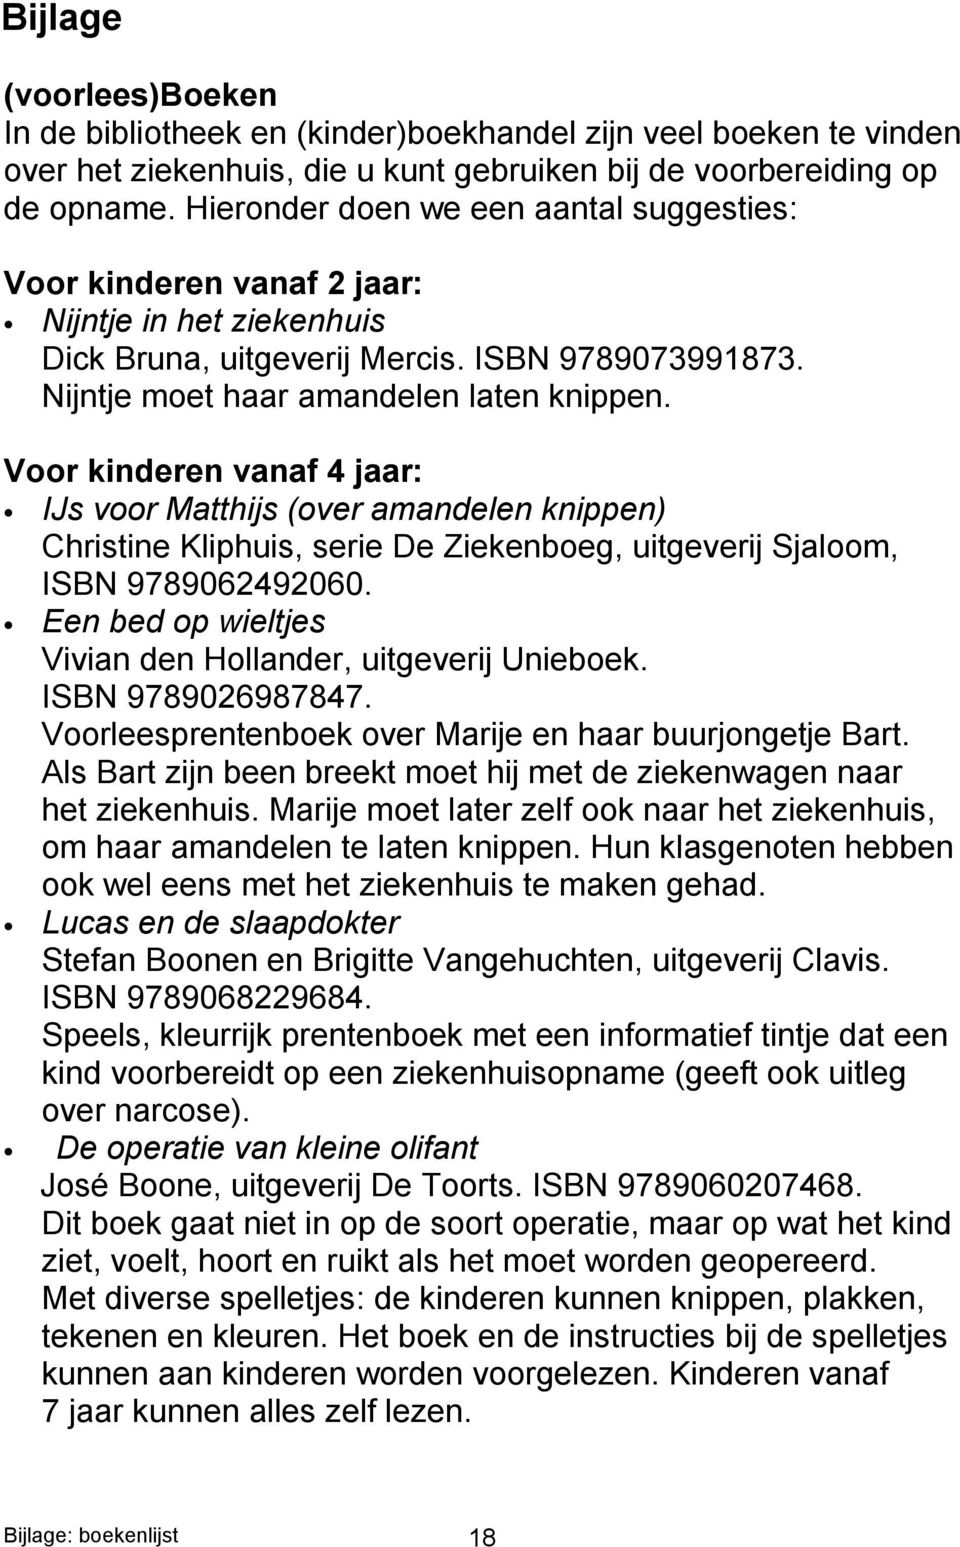 Voor kinderen vanaf 4 jaar: IJs voor Matthijs (over amandelen knippen) Christine Kliphuis, serie De Ziekenboeg, uitgeverij Sjaloom, ISBN 9789062492060.